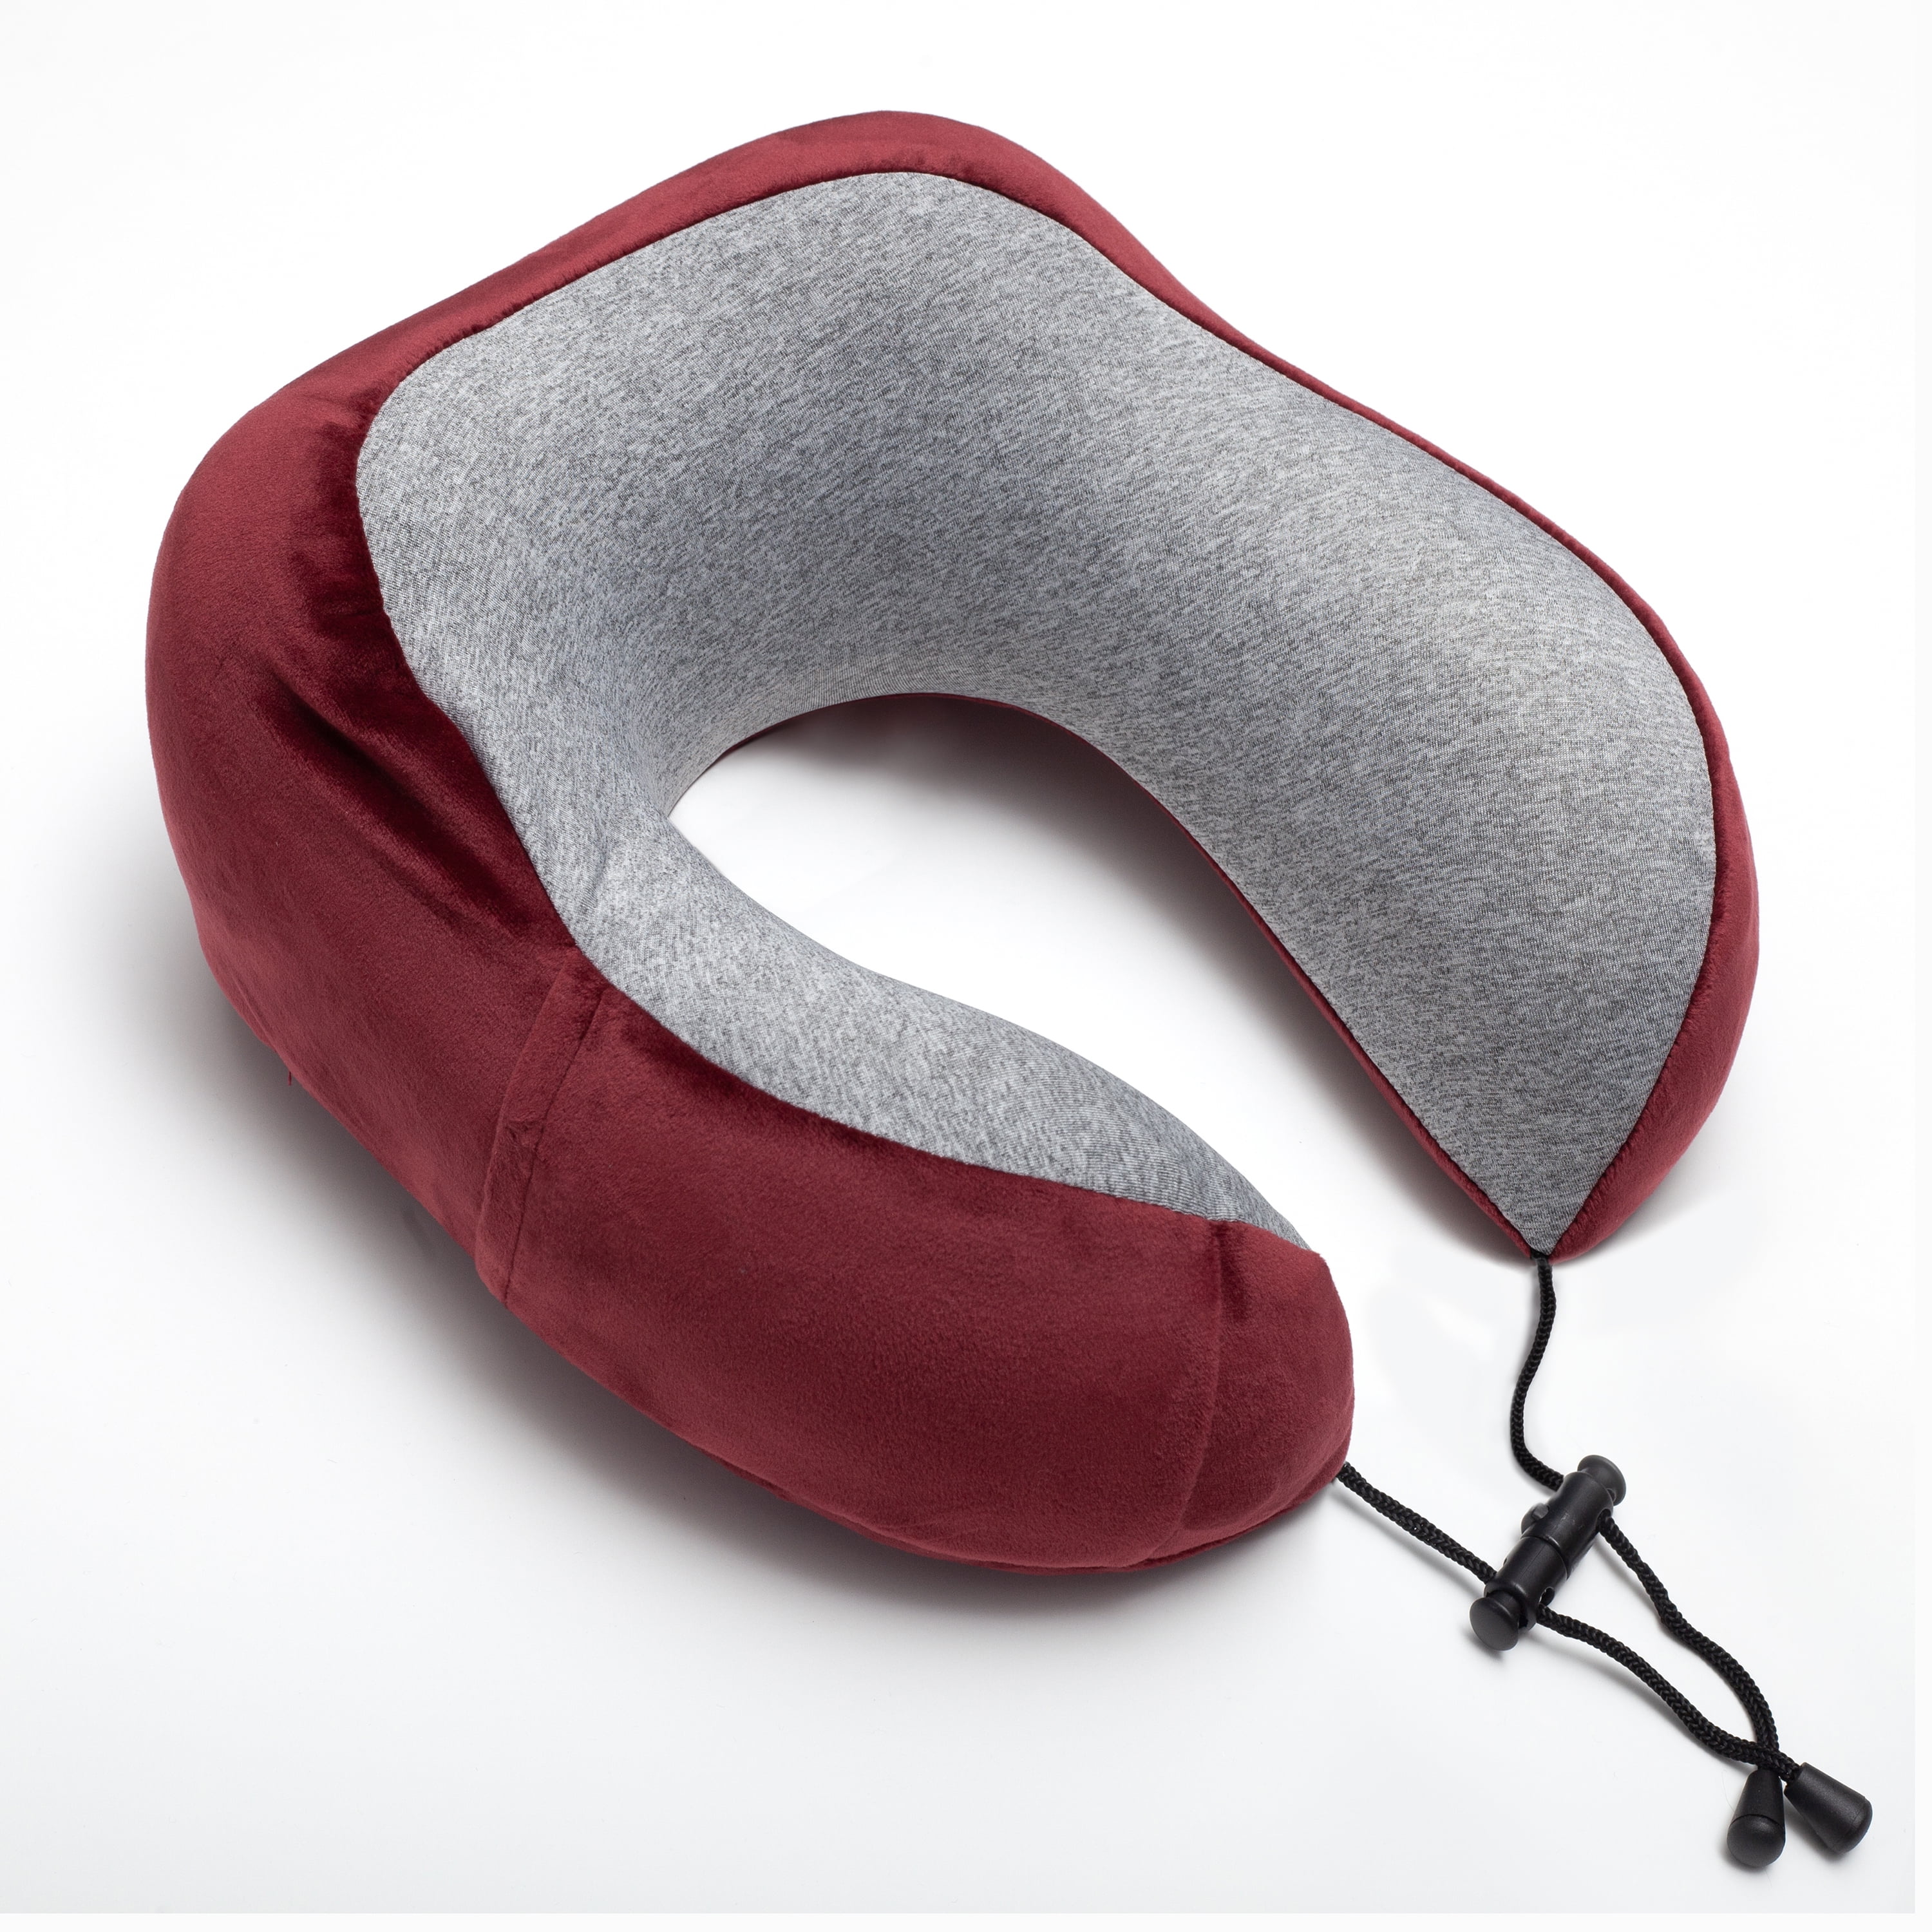 Adjustable Donut Neck Pillow - Fill Station® Pillow Kiosk